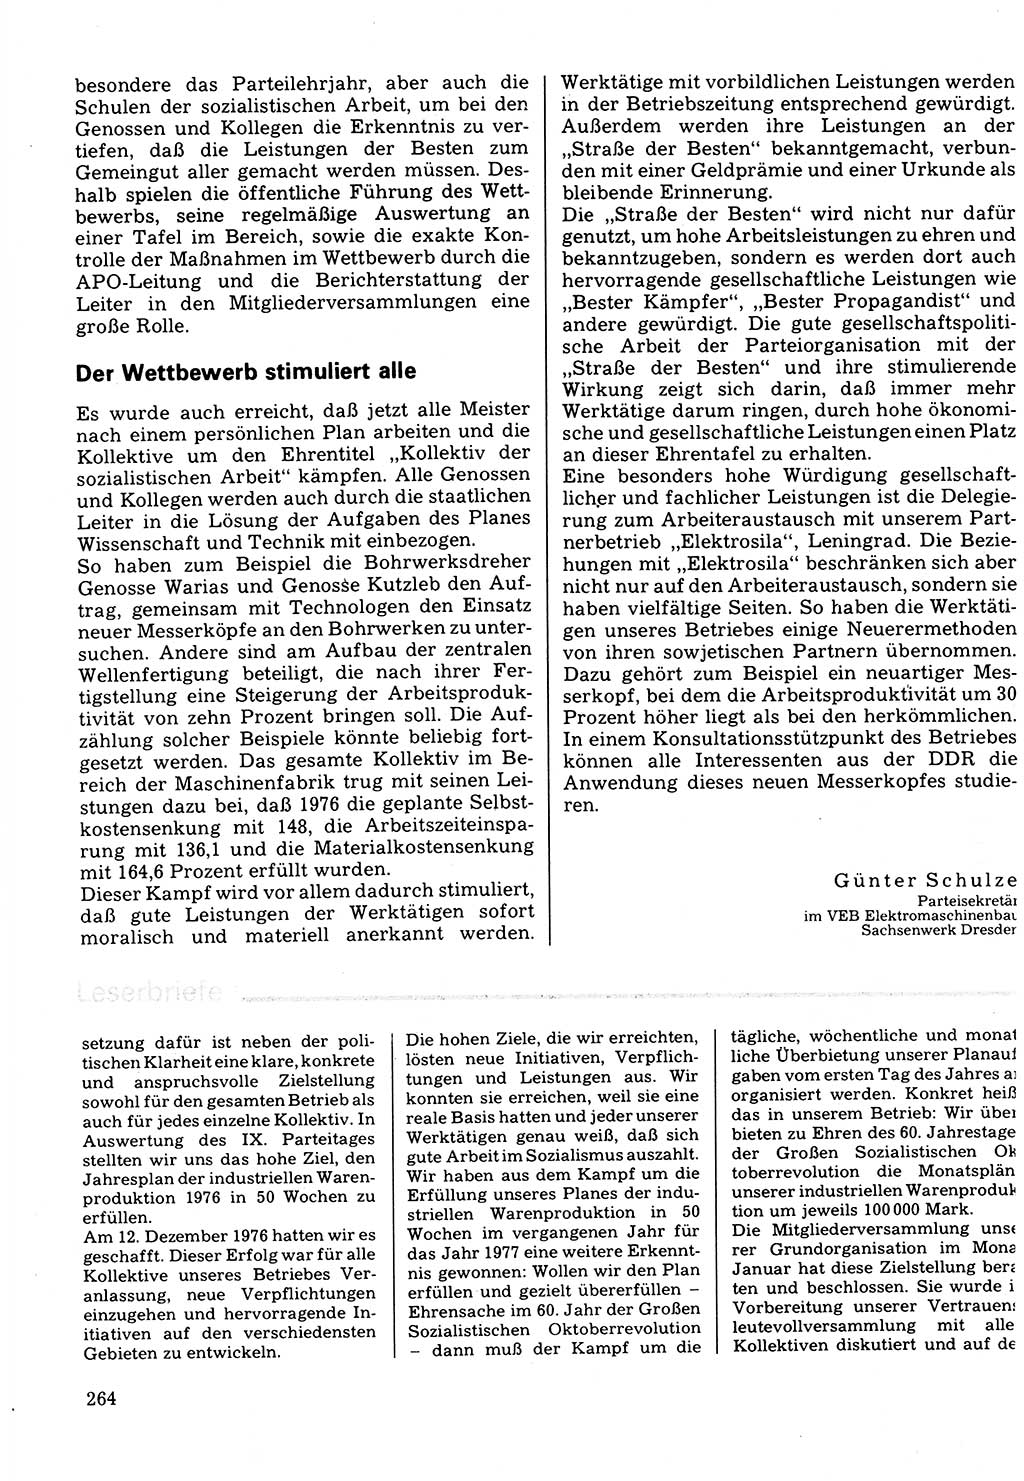 Neuer Weg (NW), Organ des Zentralkomitees (ZK) der SED (Sozialistische Einheitspartei Deutschlands) für Fragen des Parteilebens, 32. Jahrgang [Deutsche Demokratische Republik (DDR)] 1977, Seite 264 (NW ZK SED DDR 1977, S. 264)